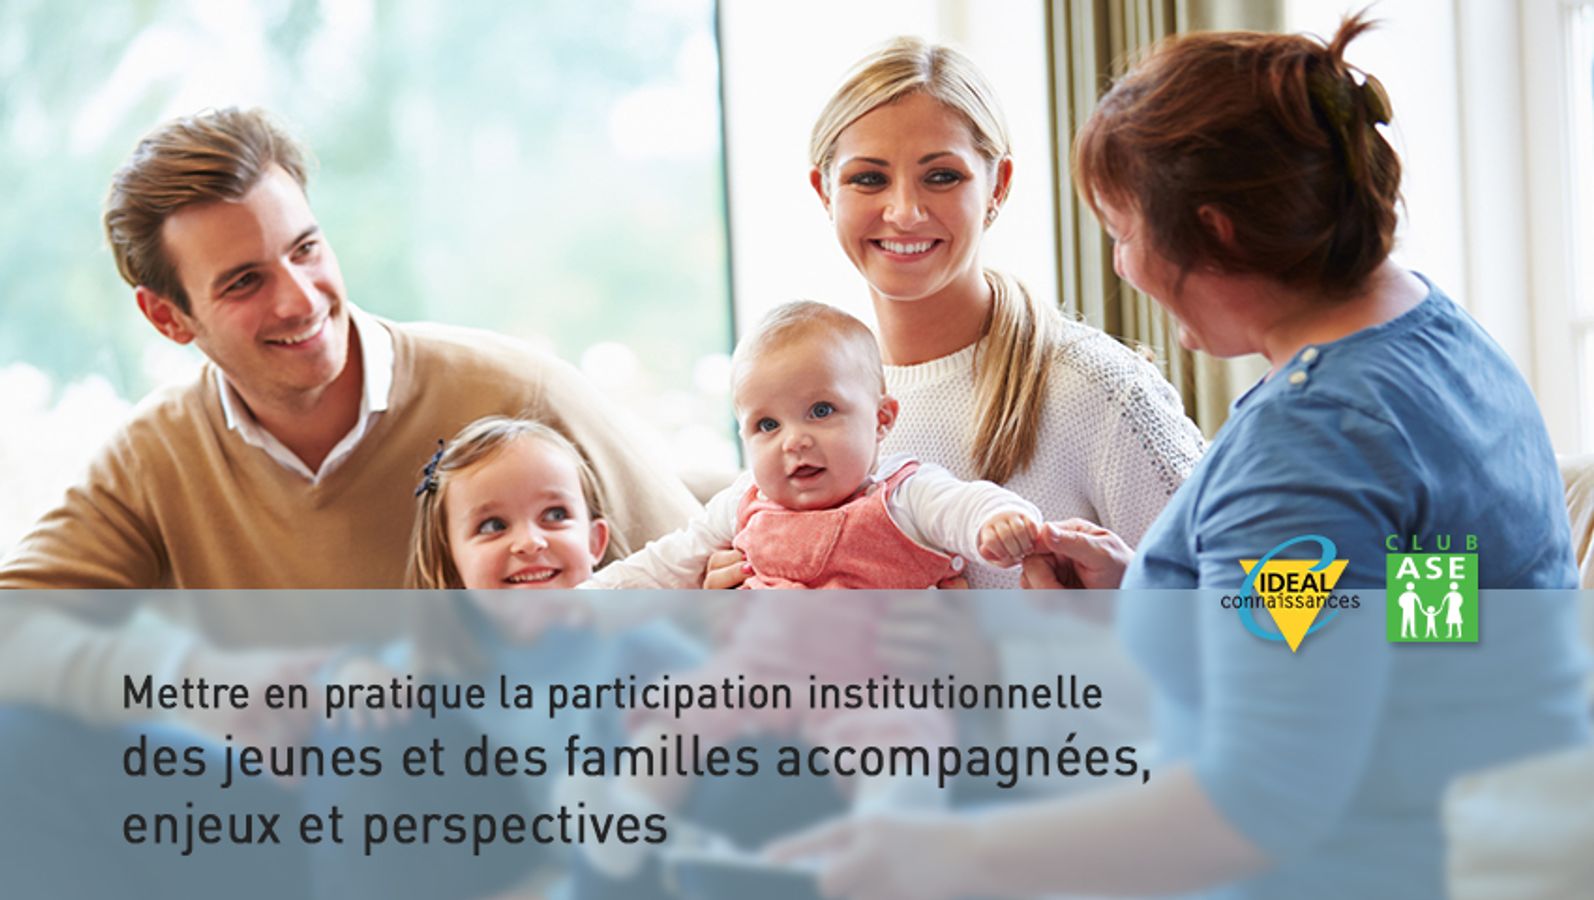 Mettre en pratique la participation institutionnelle des jeunes et des familles accompagnées, enjeux et perspectives